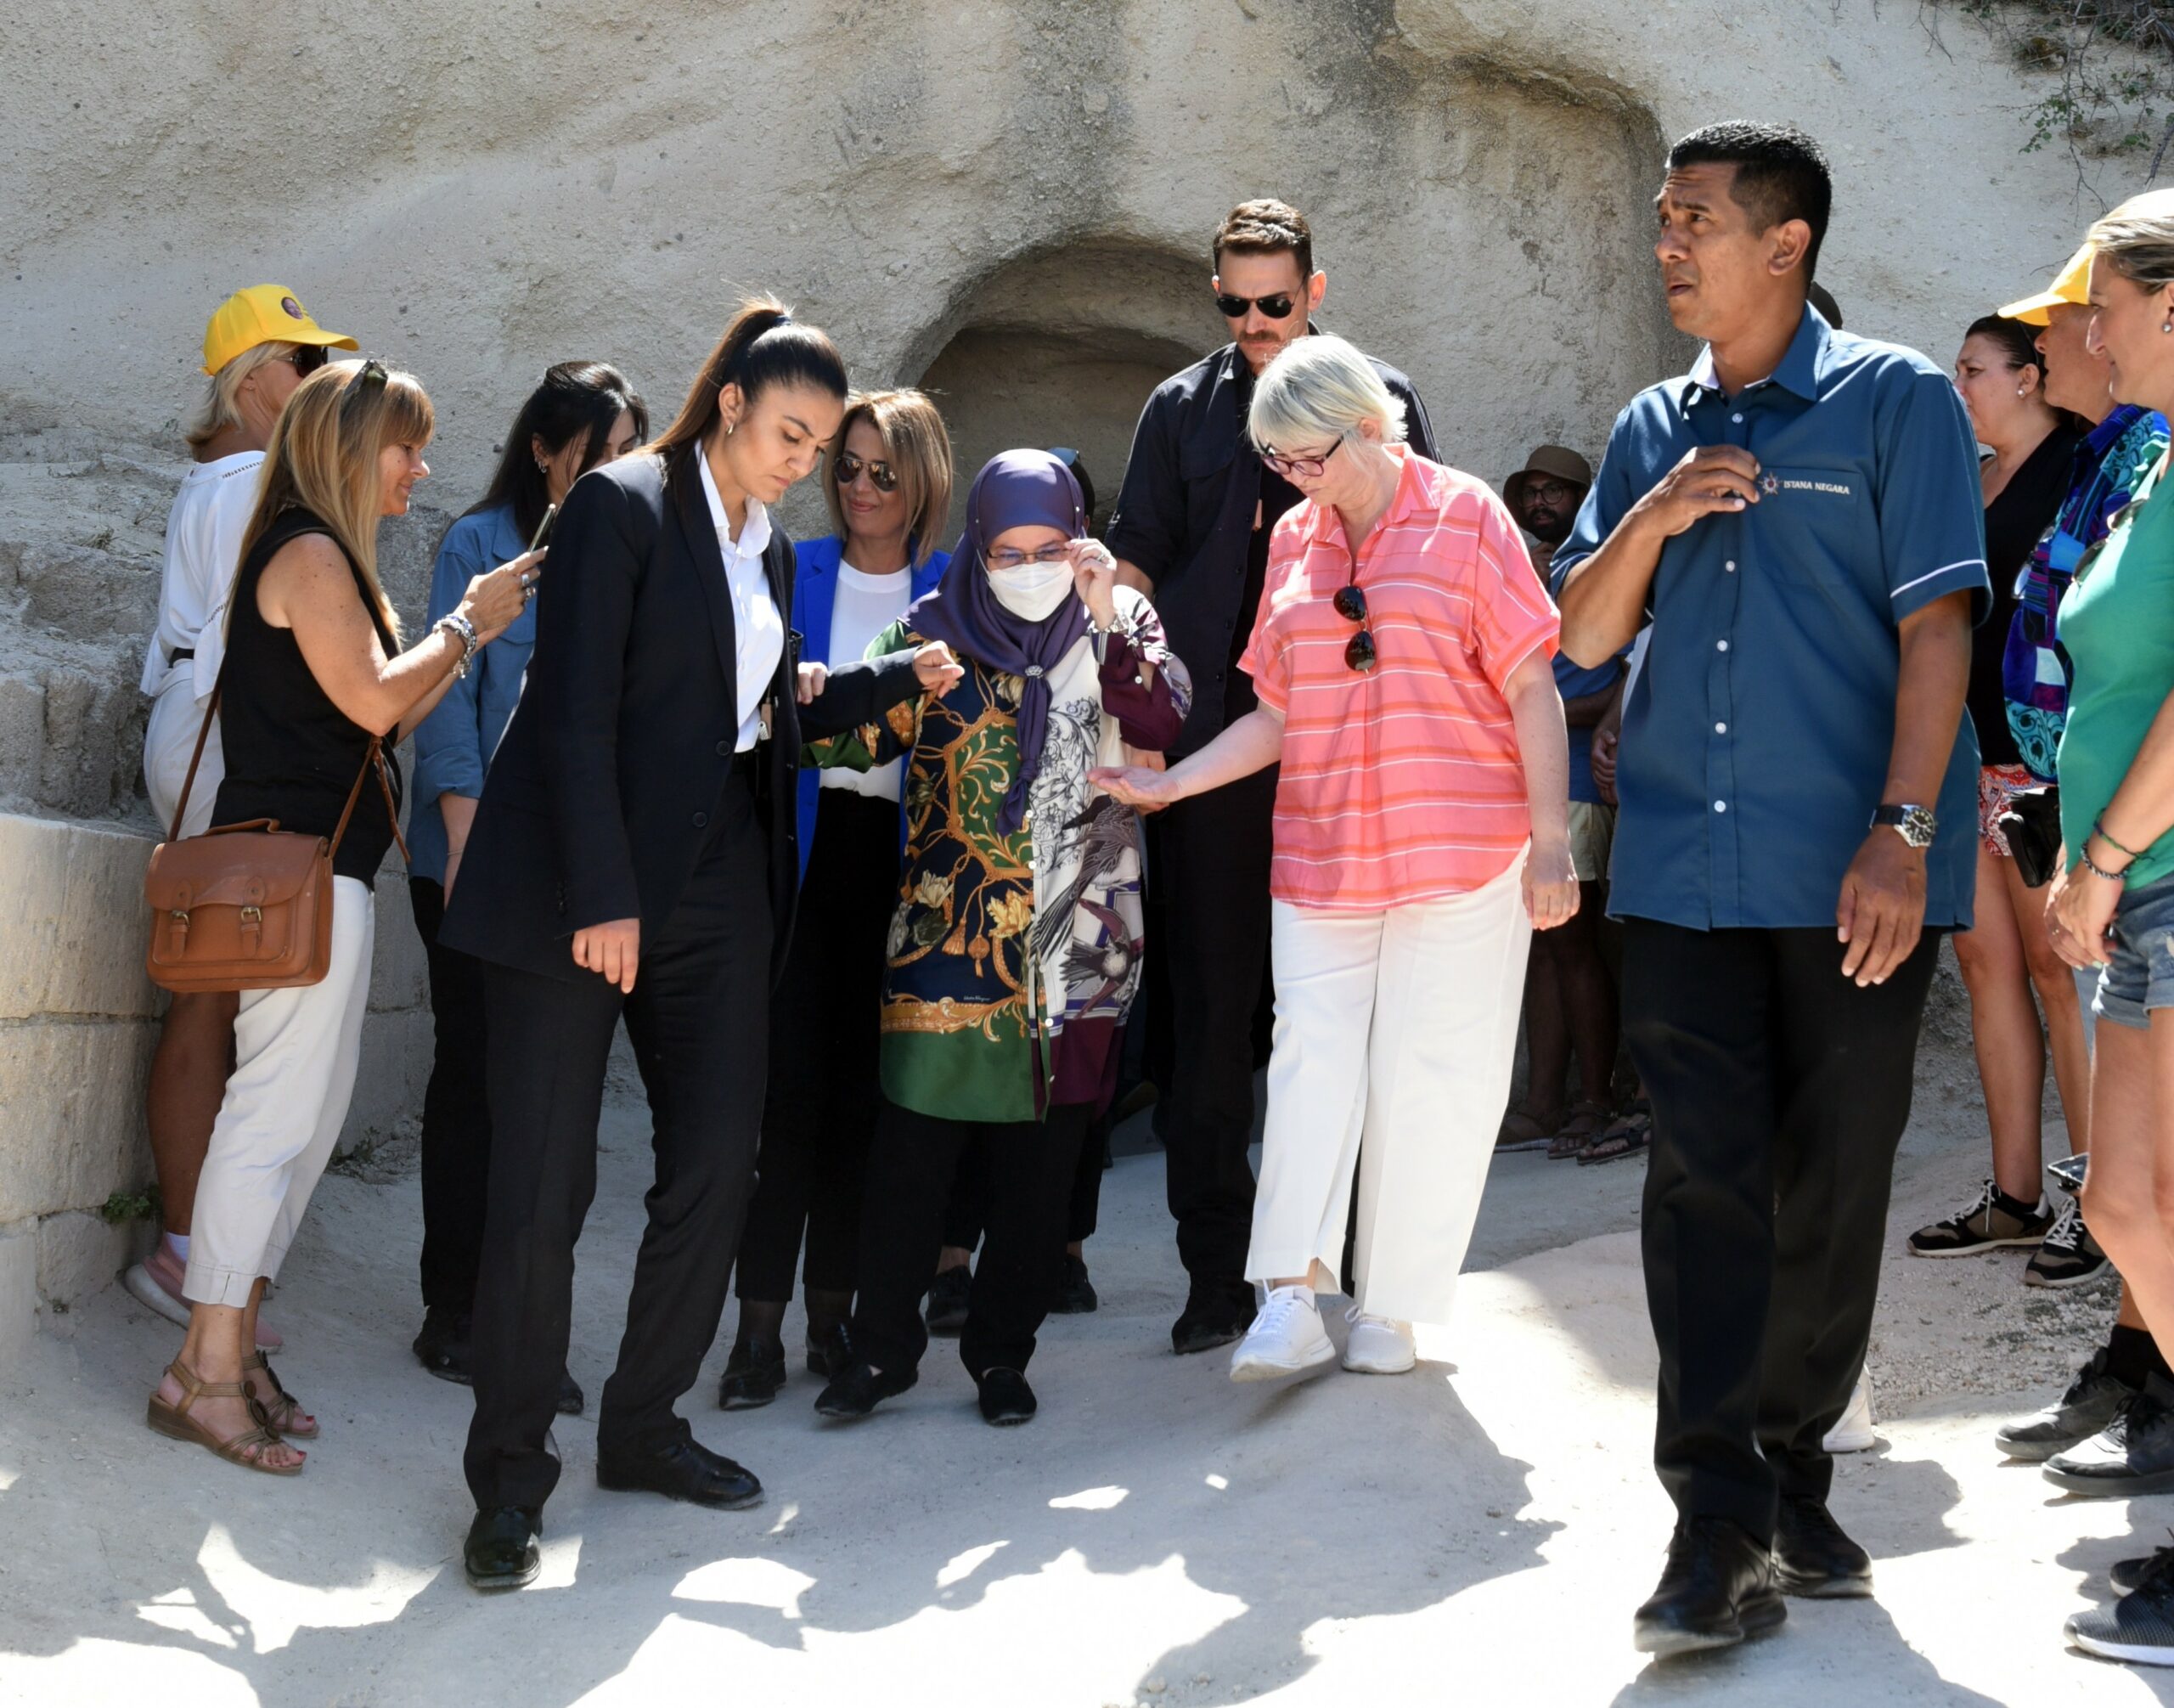 Malezya Kraliçesi Iskandariah: “Kapadokya’da yaşamak istiyorum”